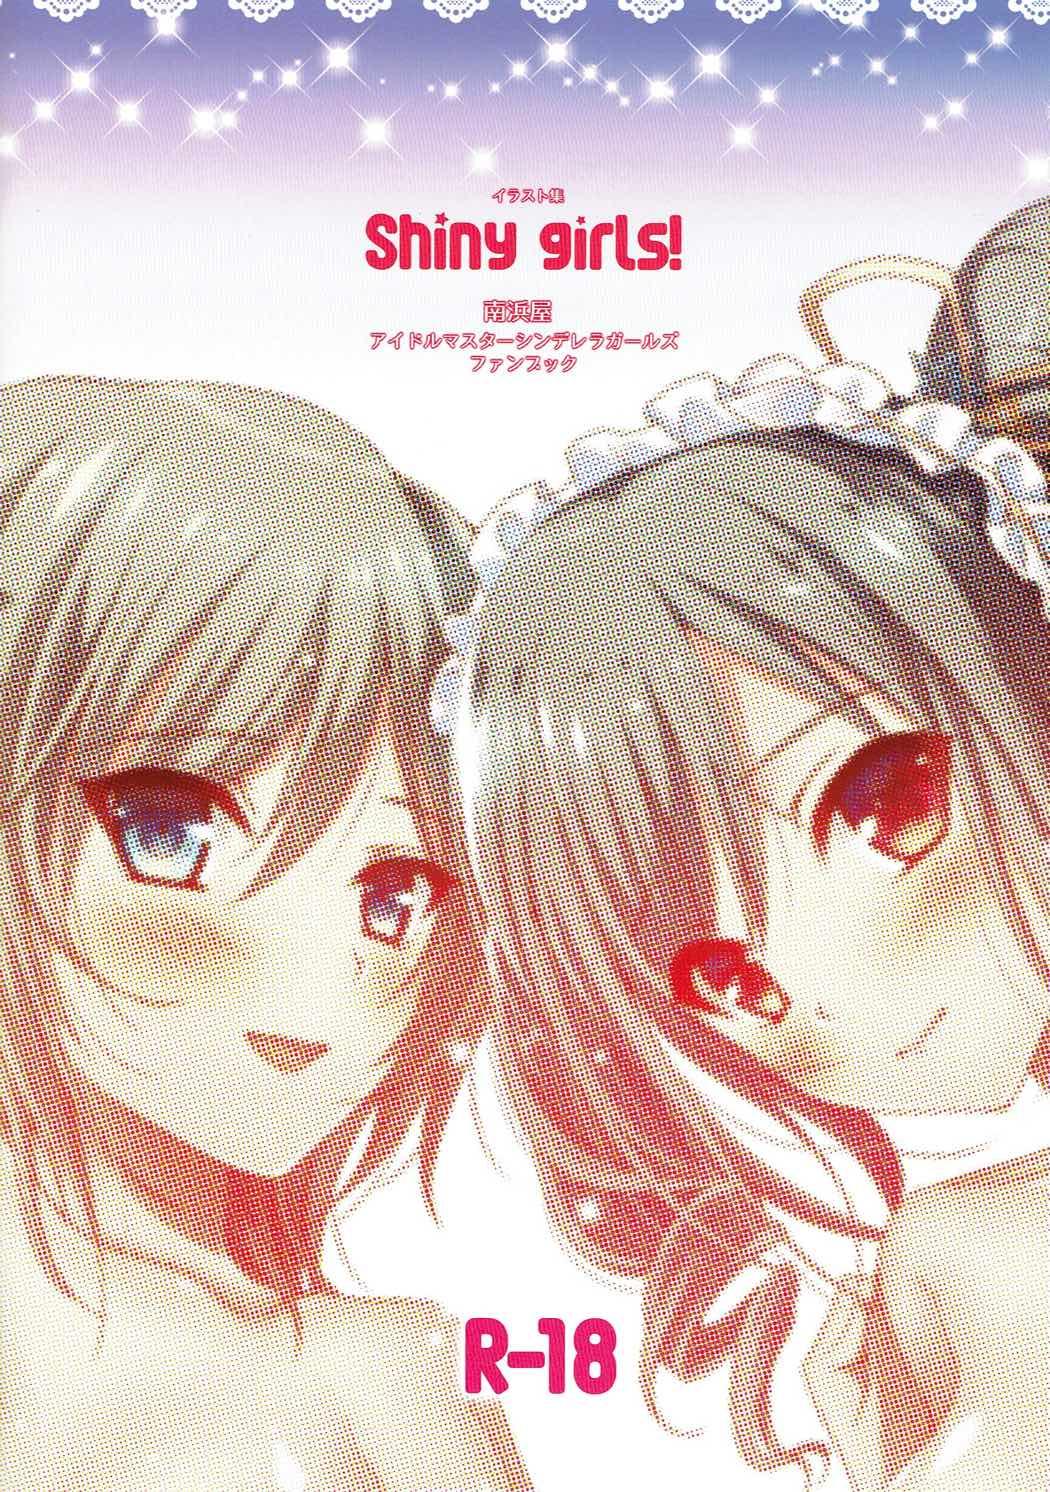 Shiny girls! 29